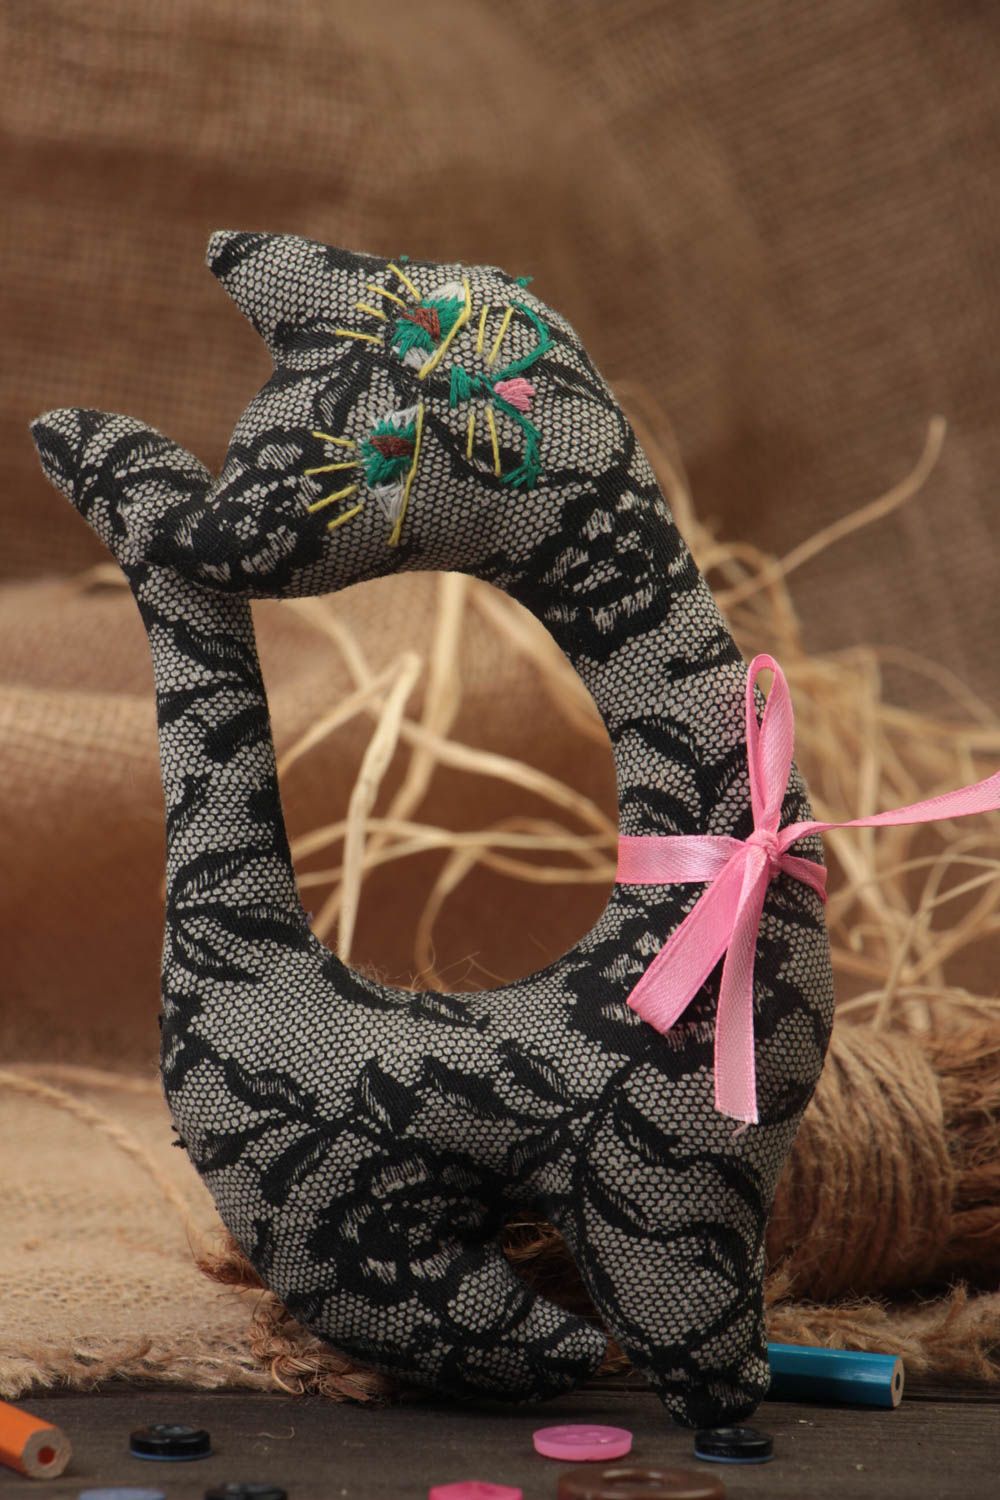 Textil Kuscheltier Katze aus Wolle schwarz weich handmade Spielzeug für Kinder foto 1